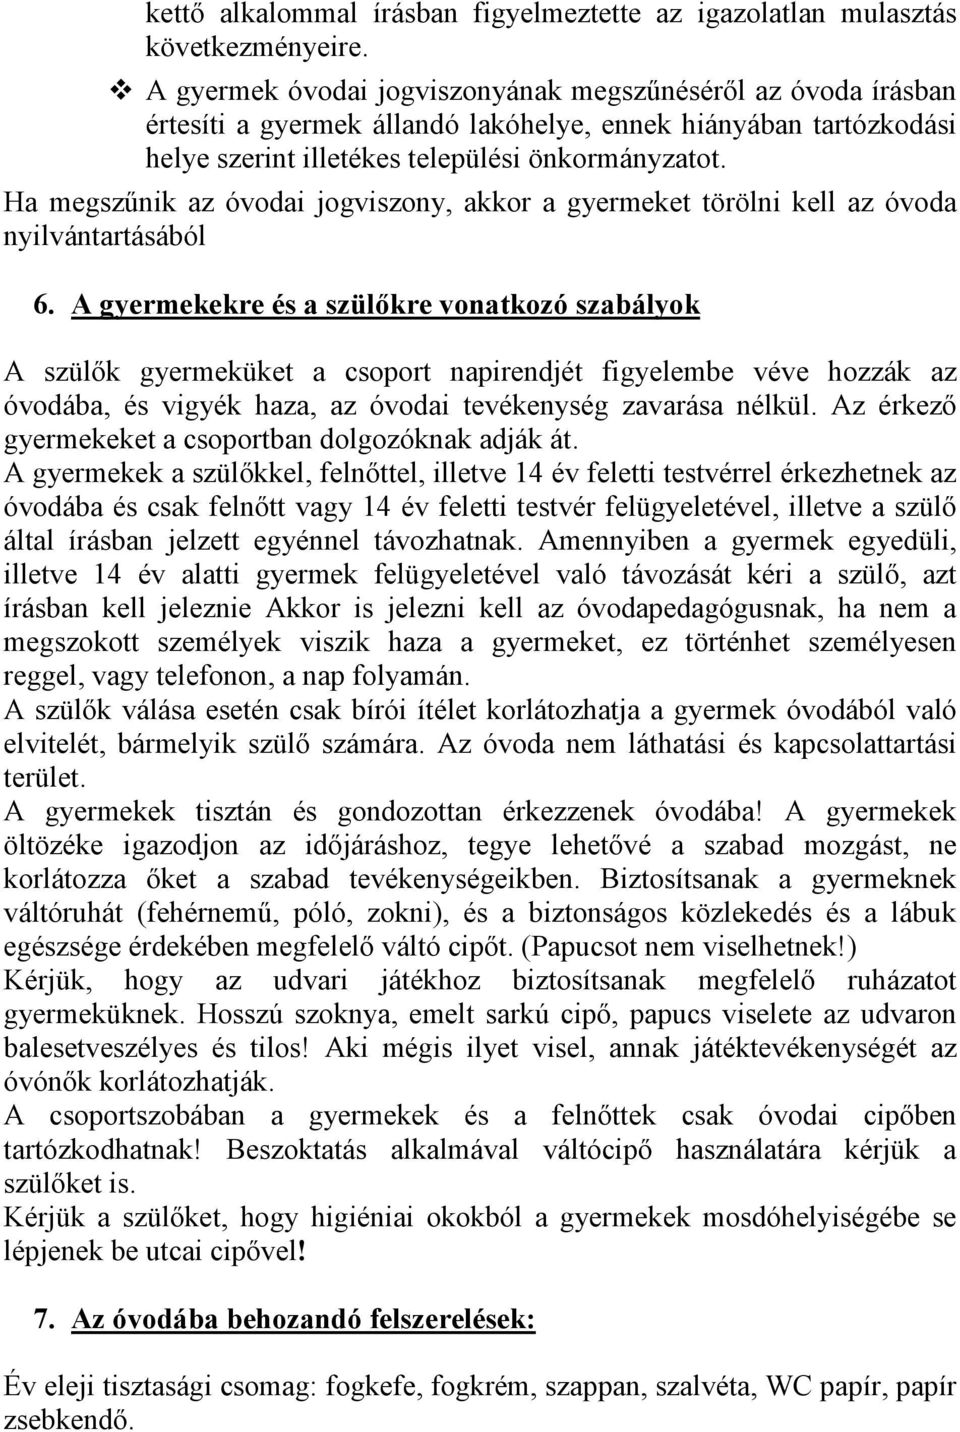 Hétszínvirág Óvoda és Bölcsıde. Házirendje - PDF Free Download